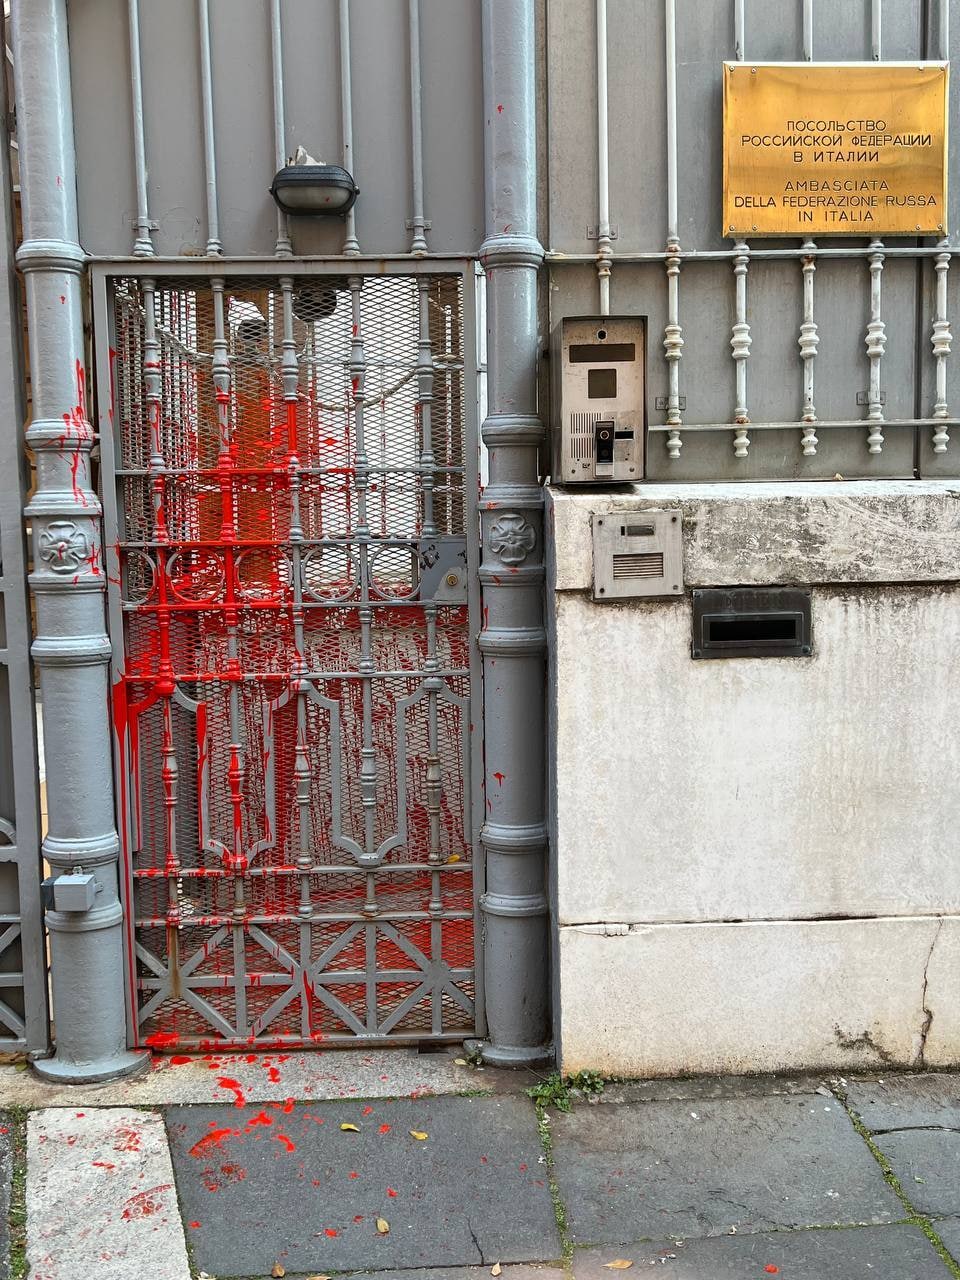 DIVLJAČKA PORUKA RUSIJI: Napadnuta ambasada u Rimu (FOTO)